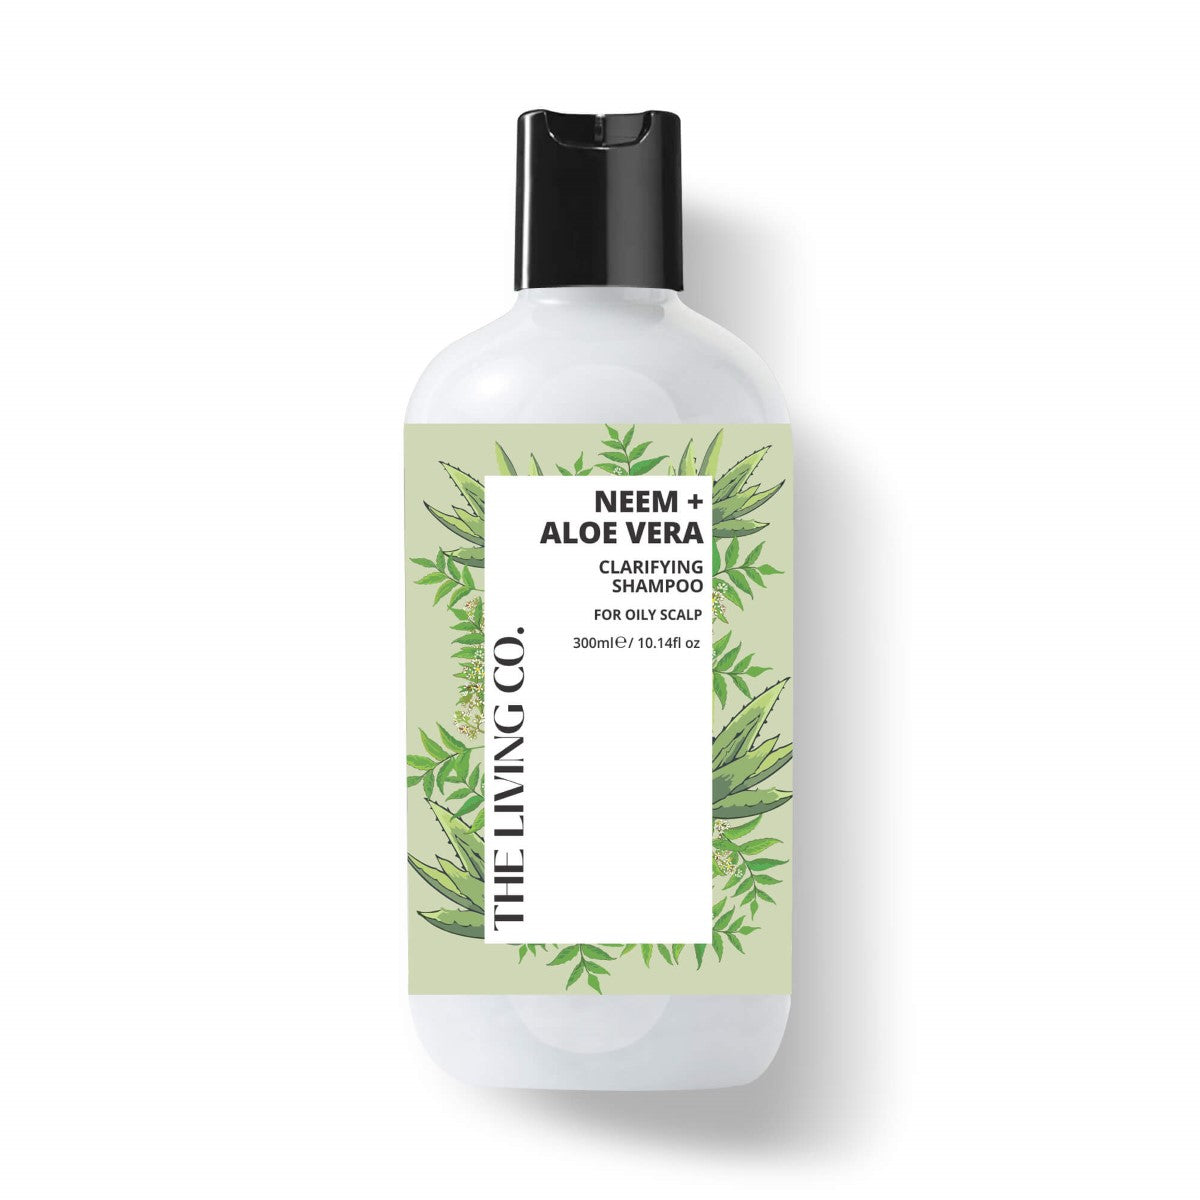 Clarifying Shampoo With Neem + Aloe Vera